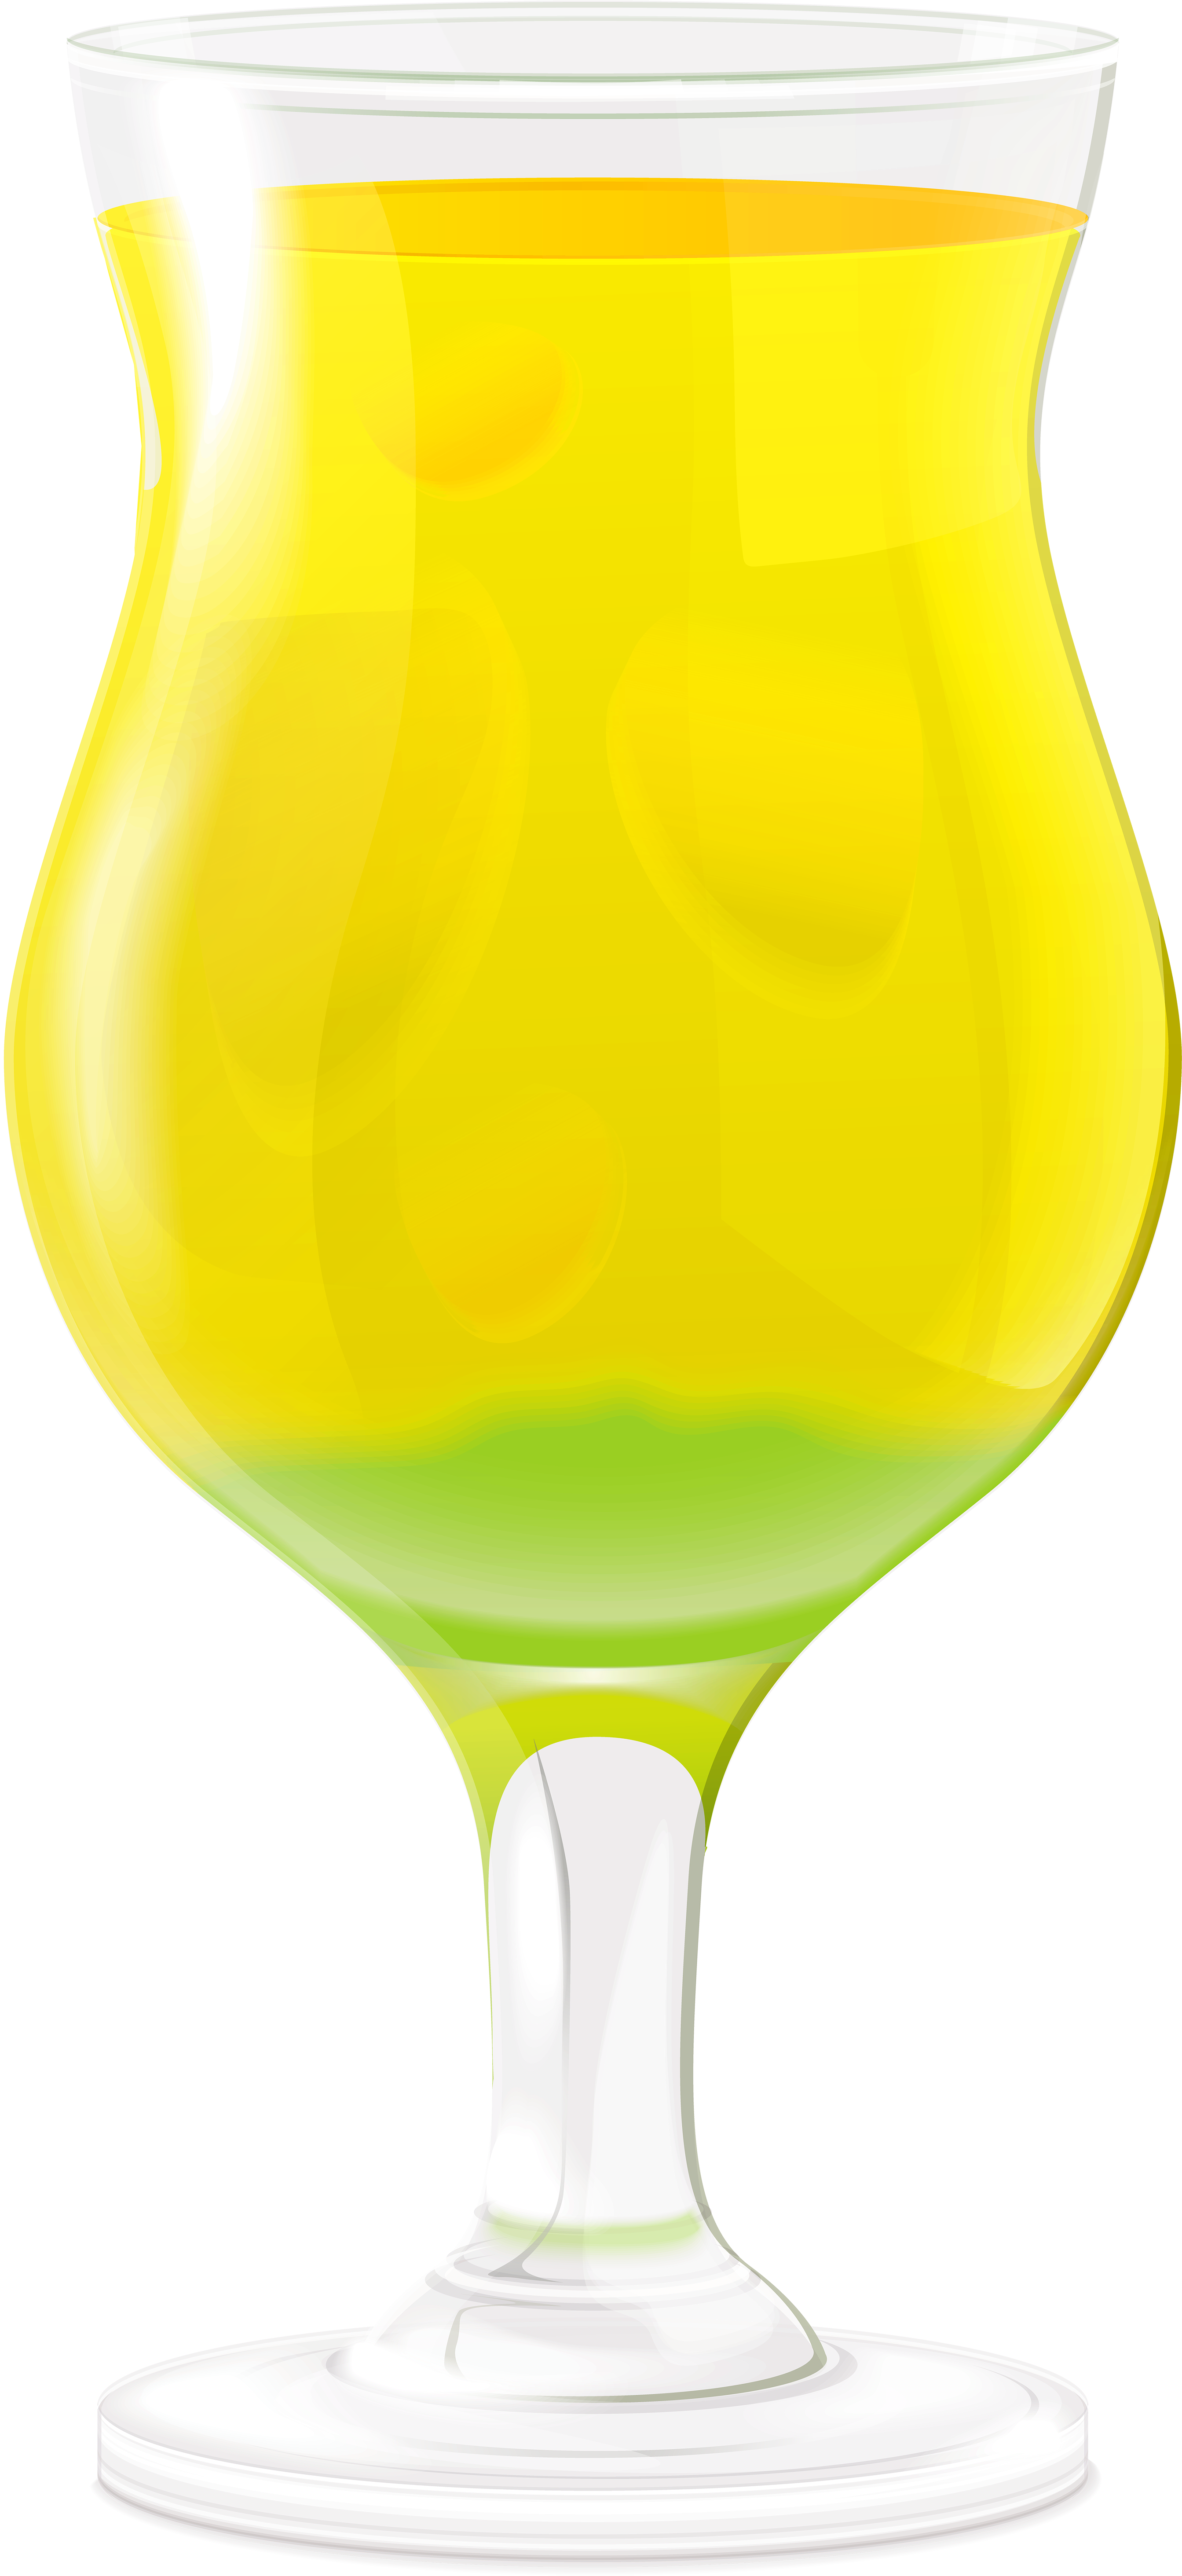 Orange Juice Beer Wine Glass - Orange Juice Beer Wine Glass (2752x6000)